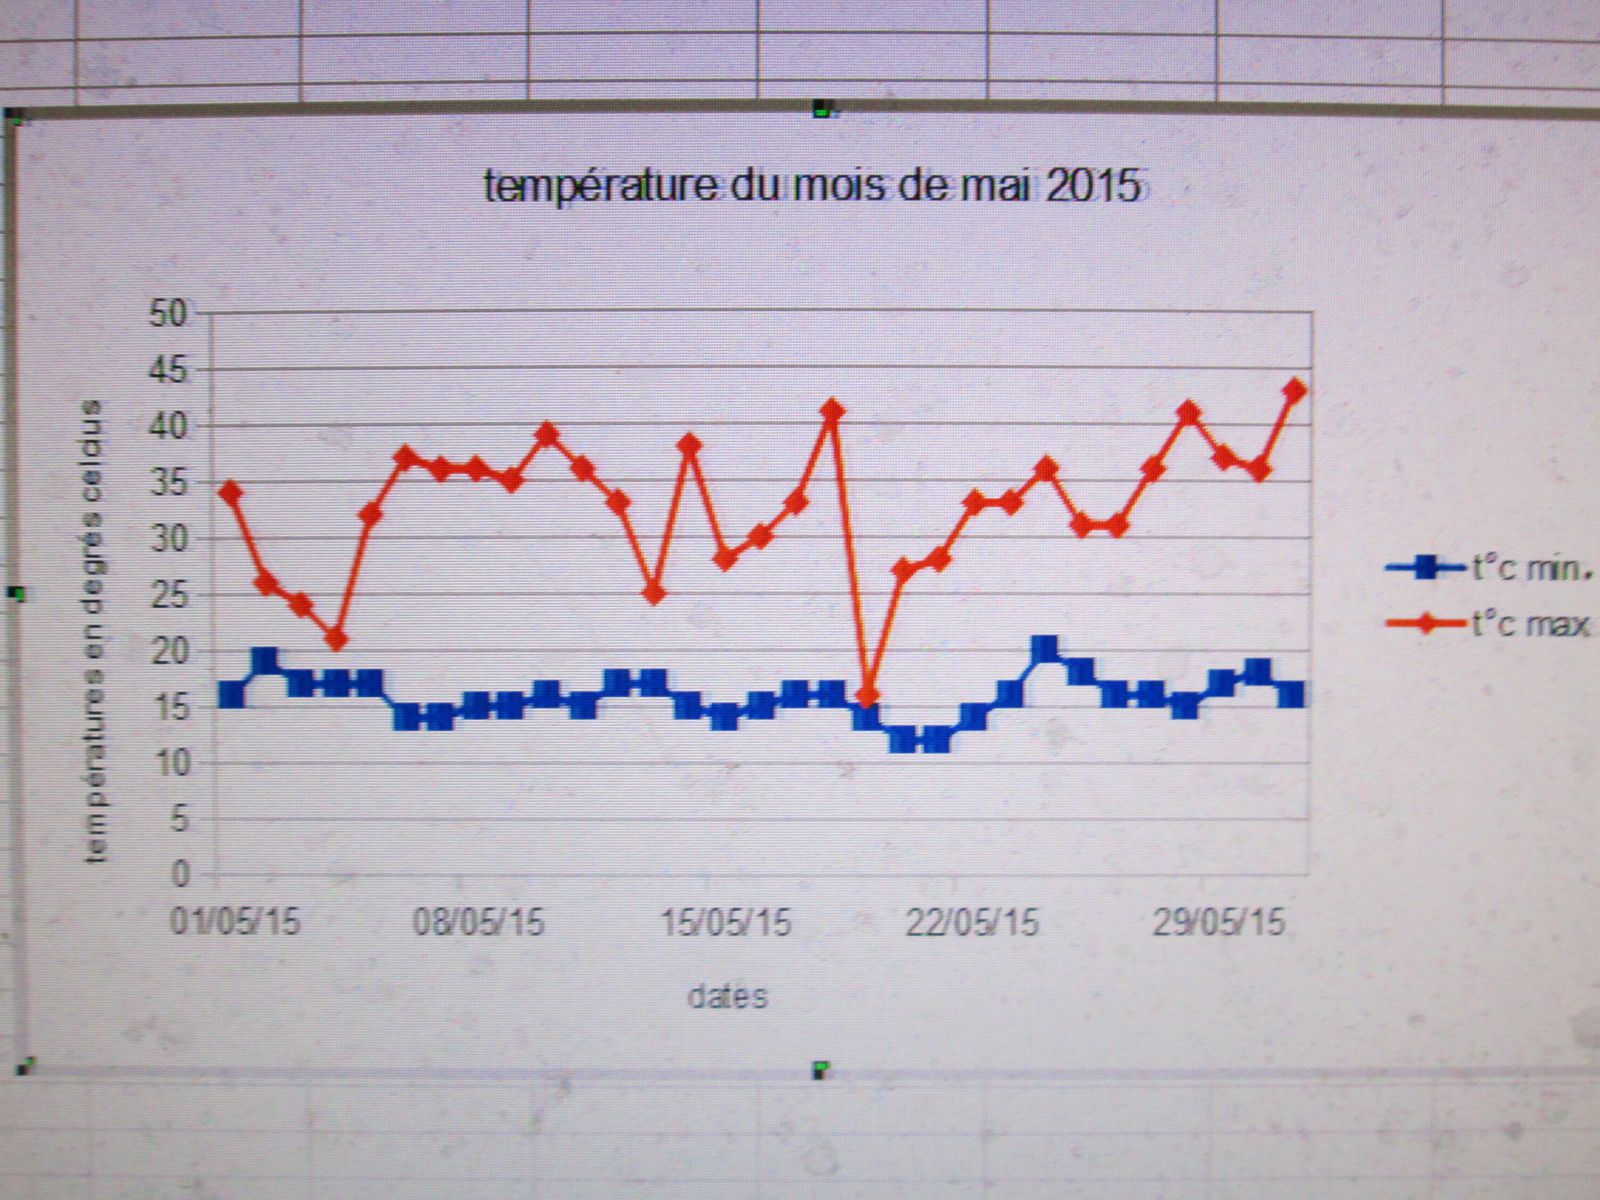 tableau et courbes des températures du mois de mai 2015